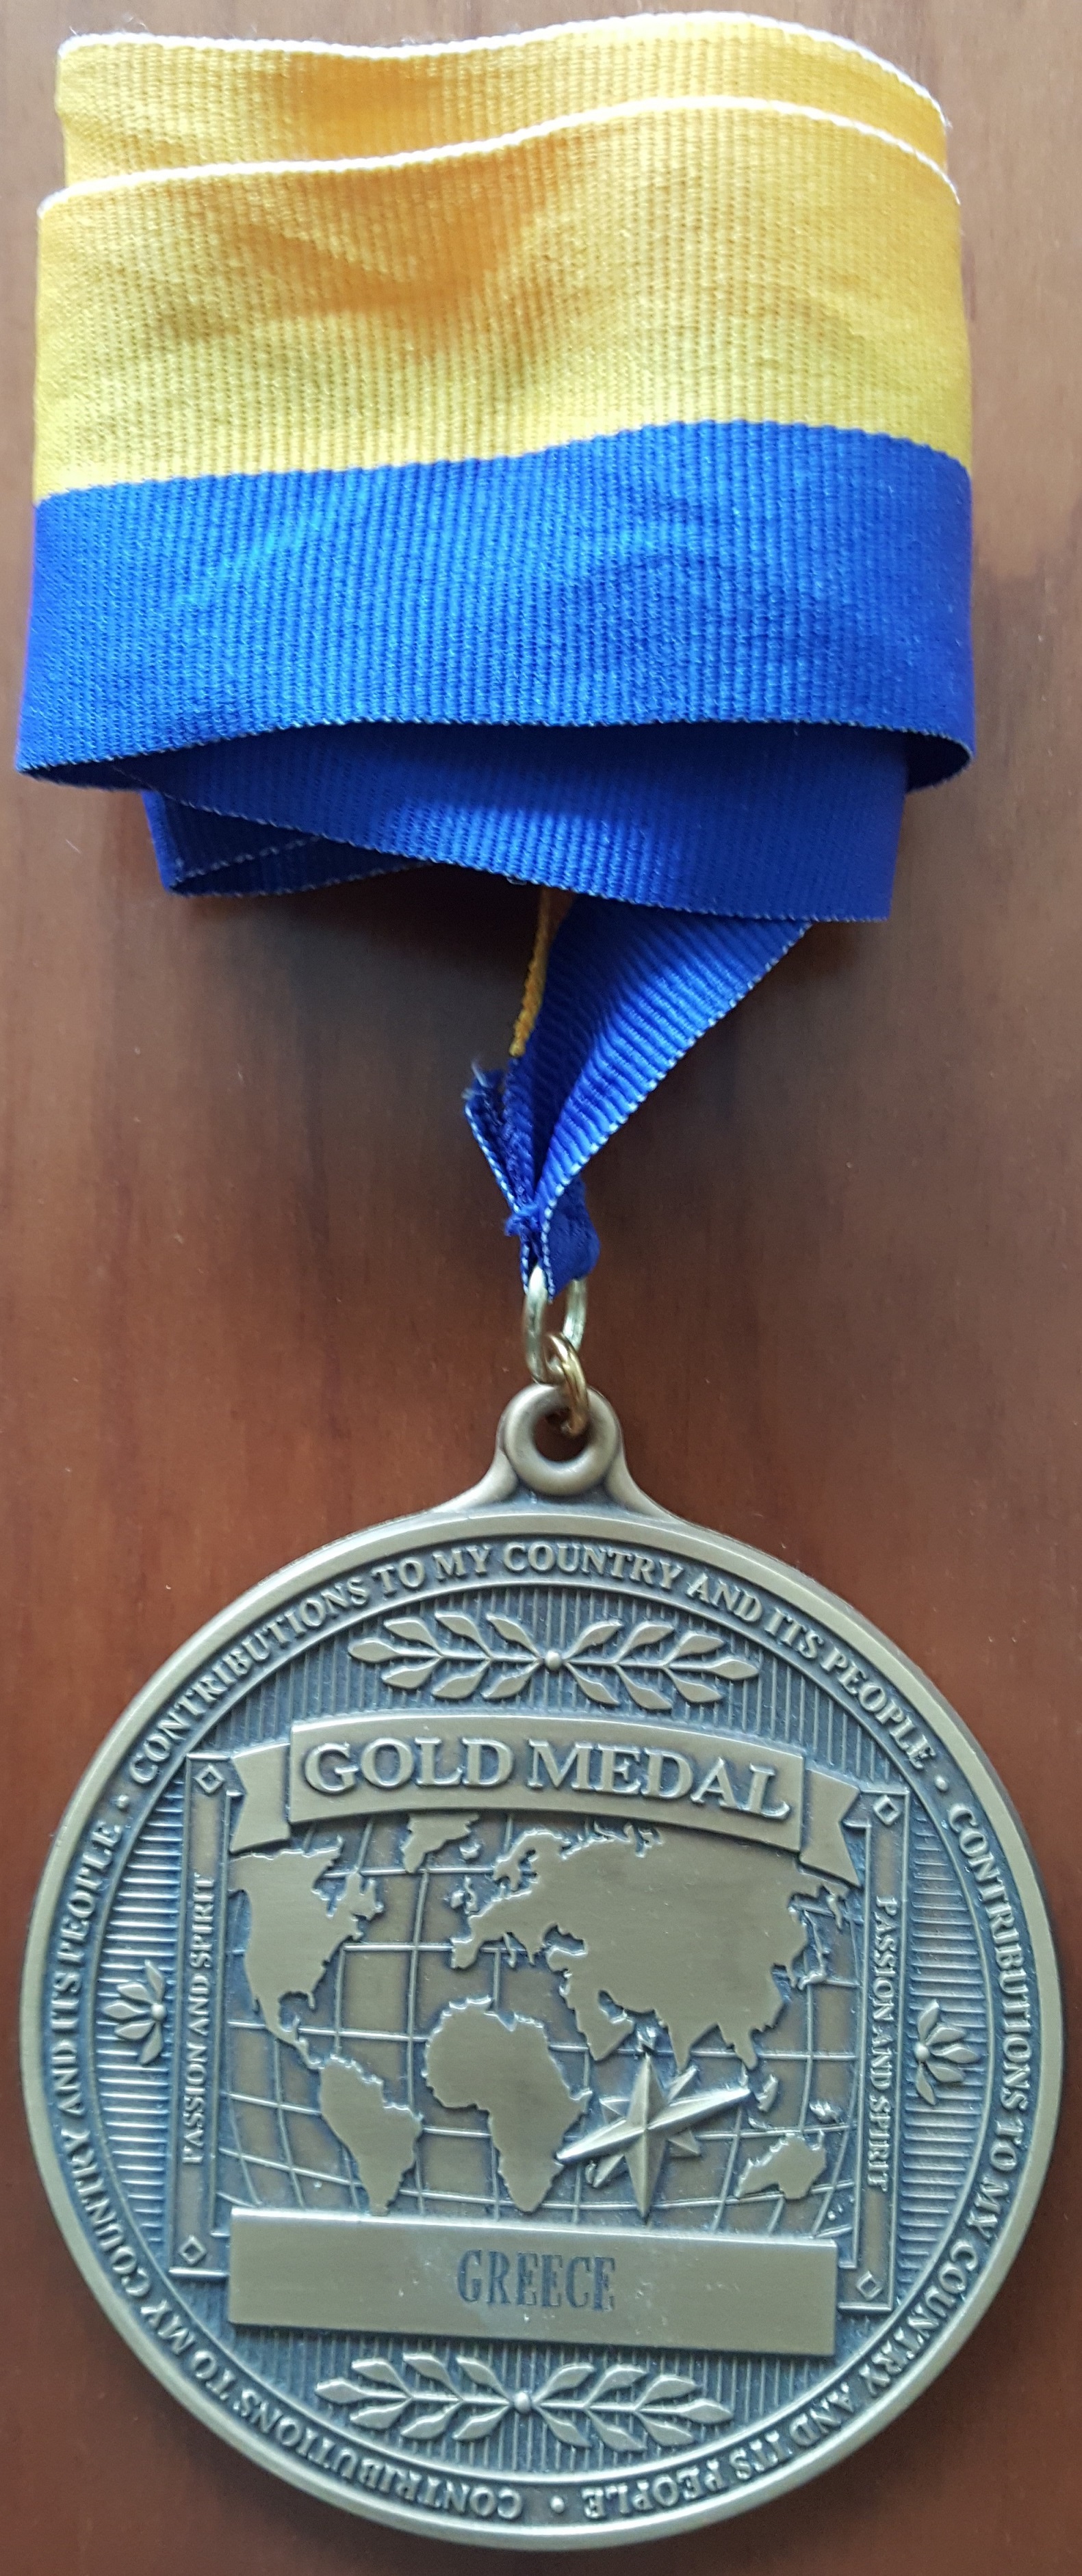 ΒΕΦΑ ΑΛΕΞΙΑΔΟΥ Gold Medal for Greece  vefaalexiadou cookbooks & blog vefaalexiadou.gr